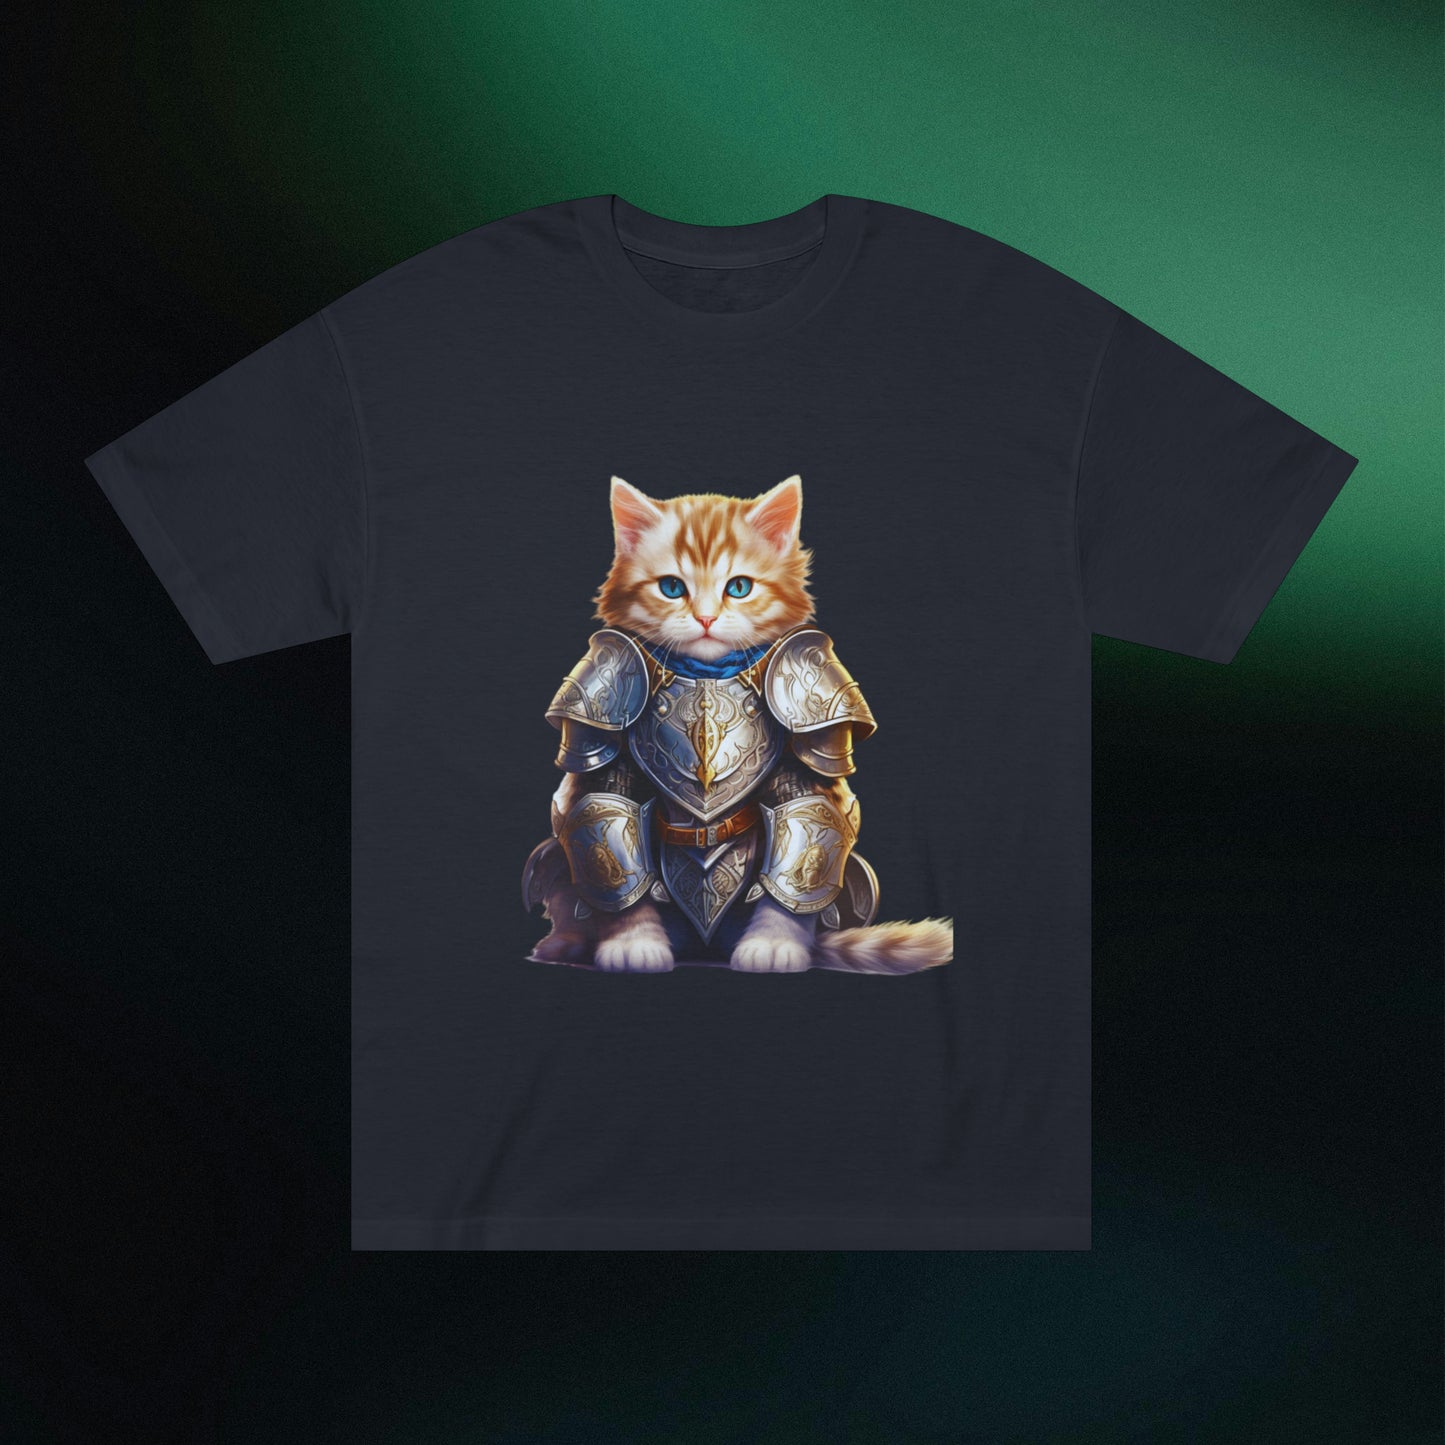 Cat in Armor Classic Unisex Tee T-Shirt Black S 